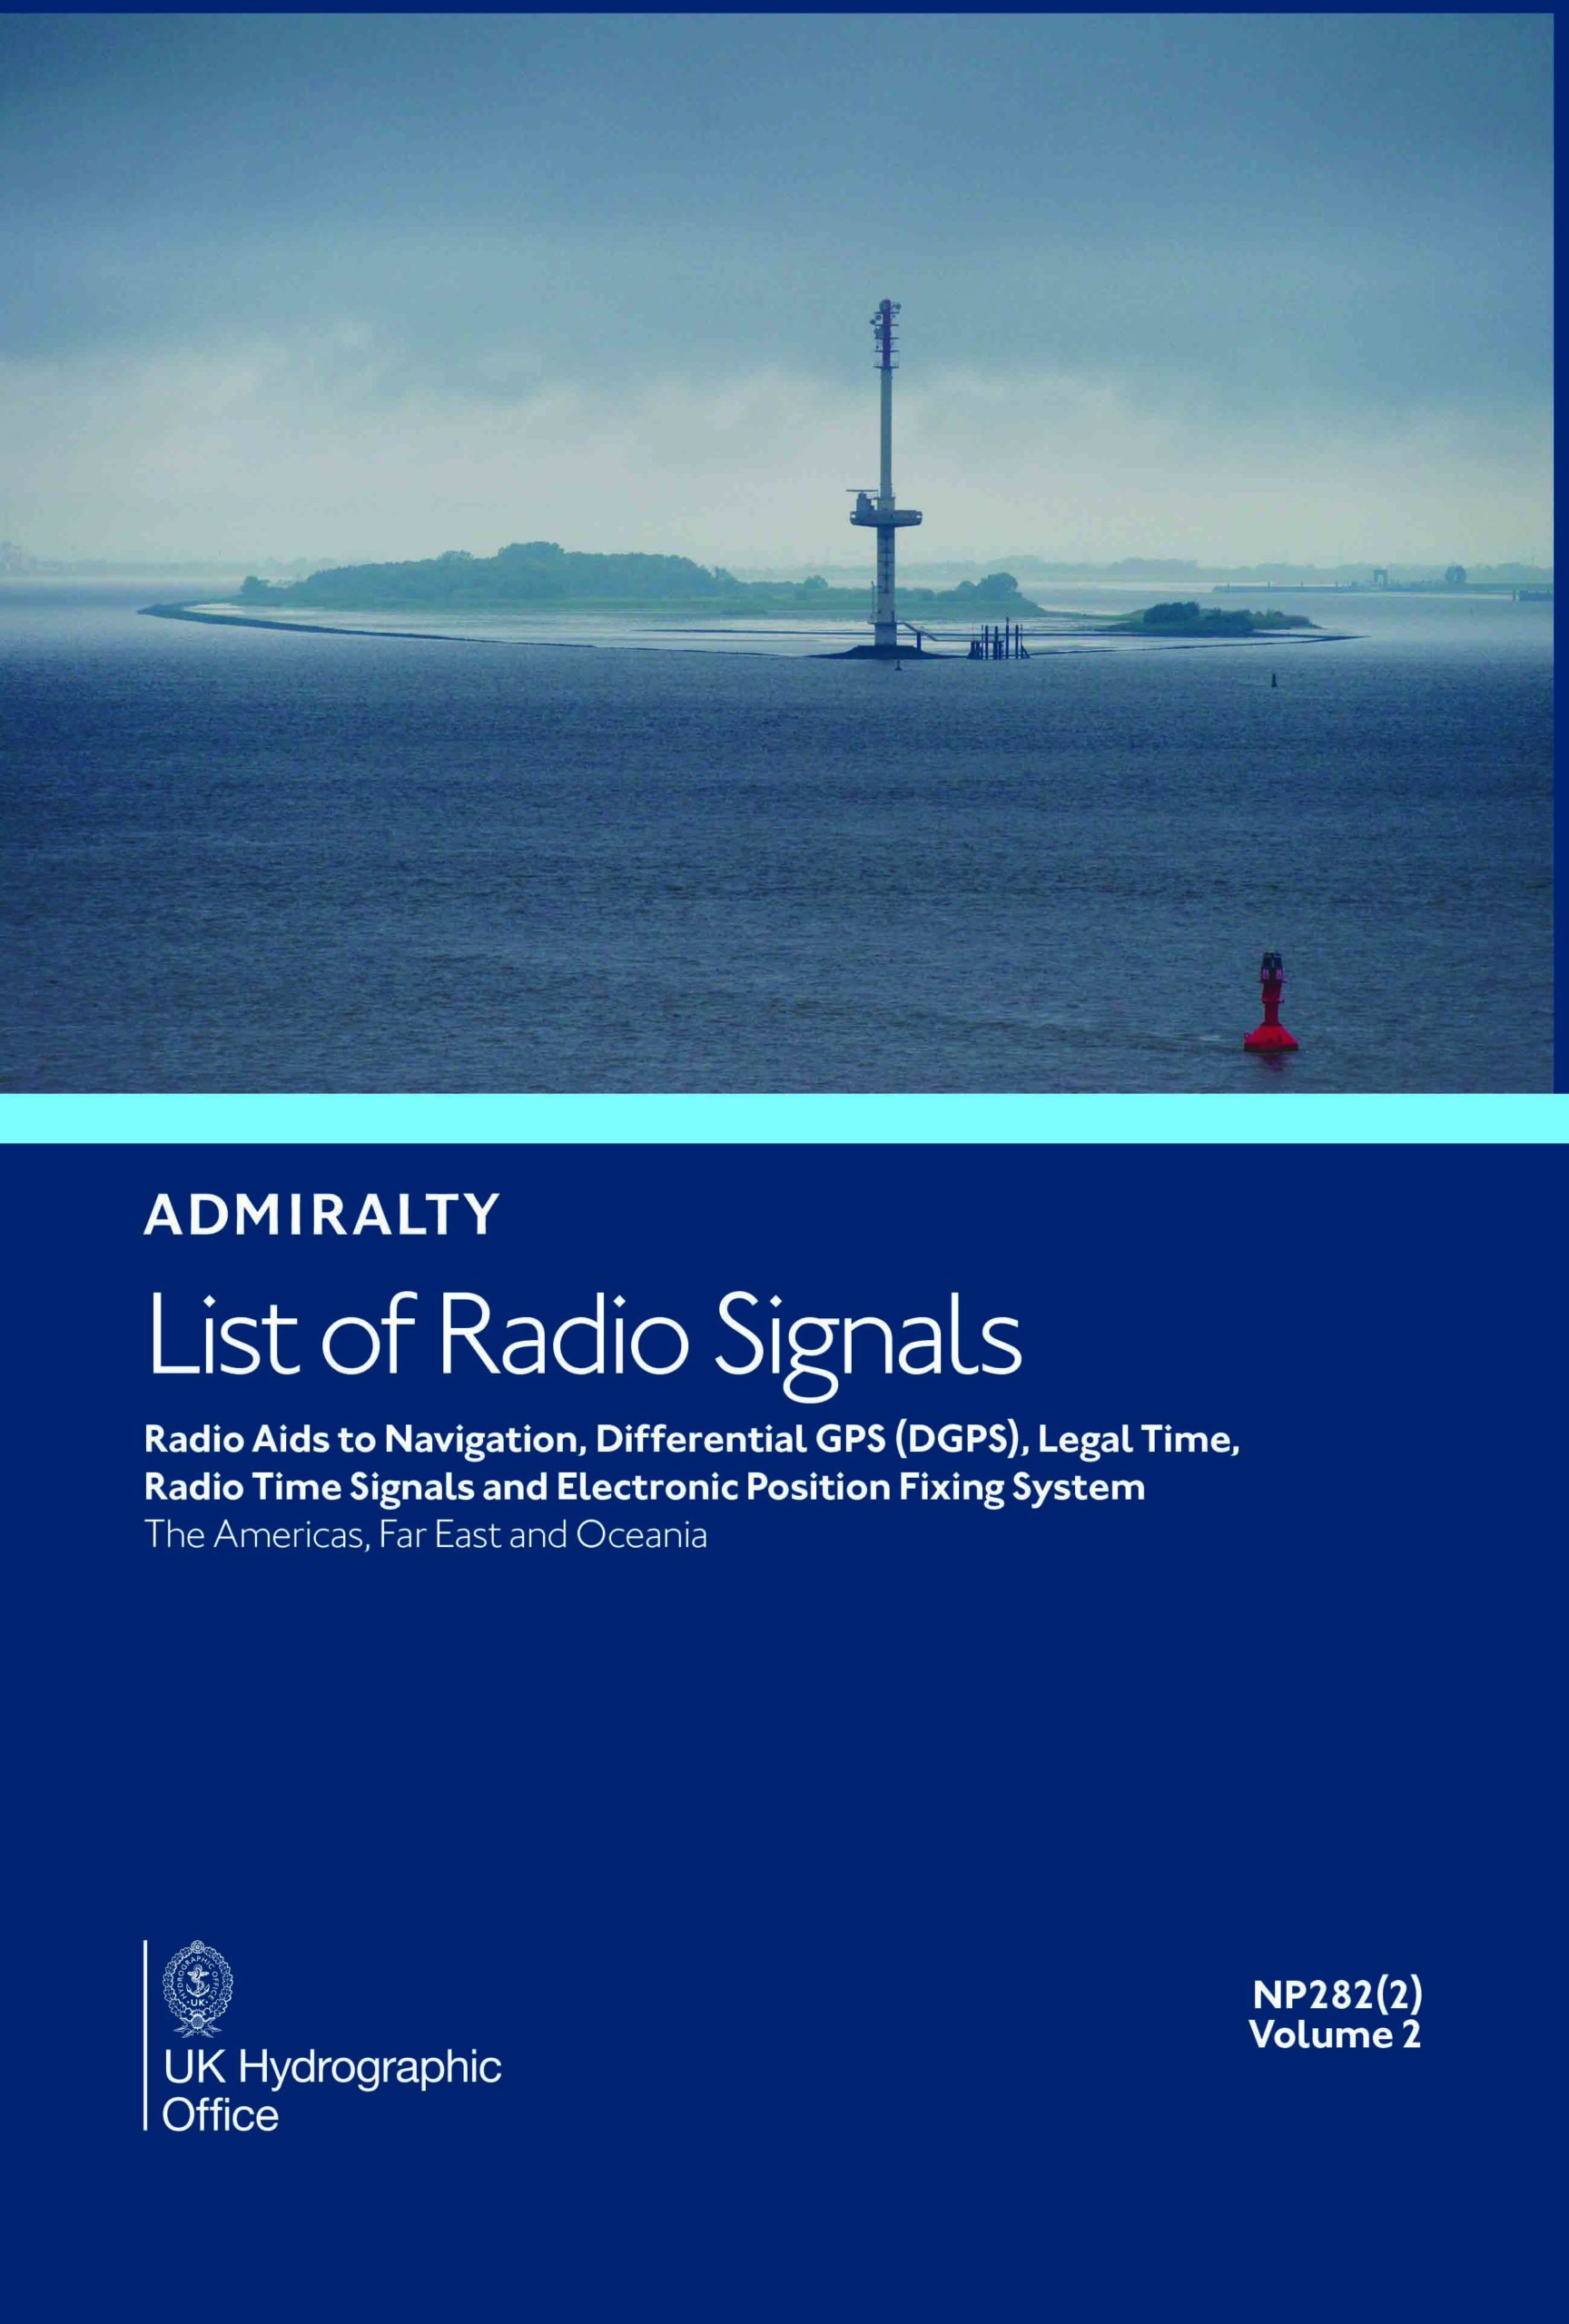 NP282(2) List of Radio Signals Vol. 2 Part 2